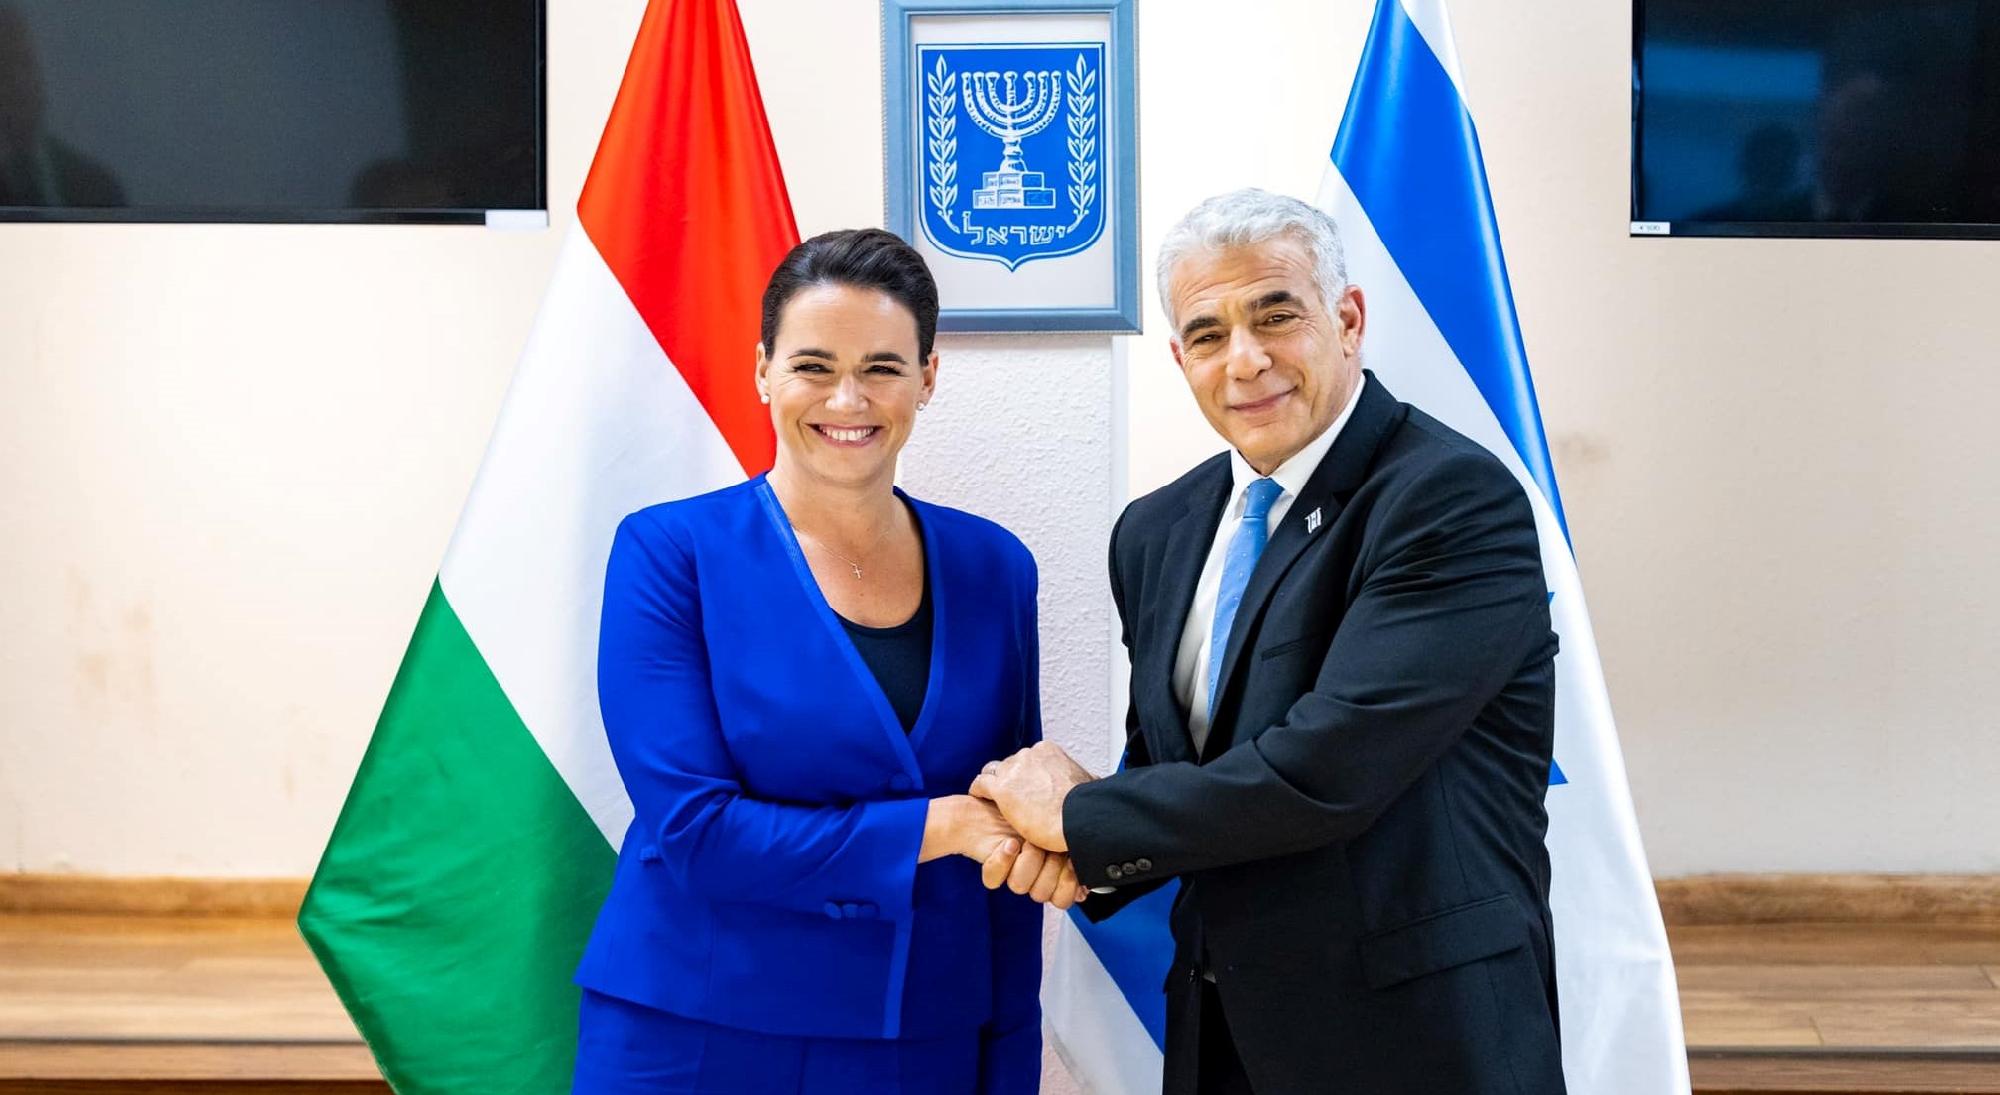 Novák Katalin a béke megőrzésének fontosságáról tárgyalt az izraeli miniszterelnökkel